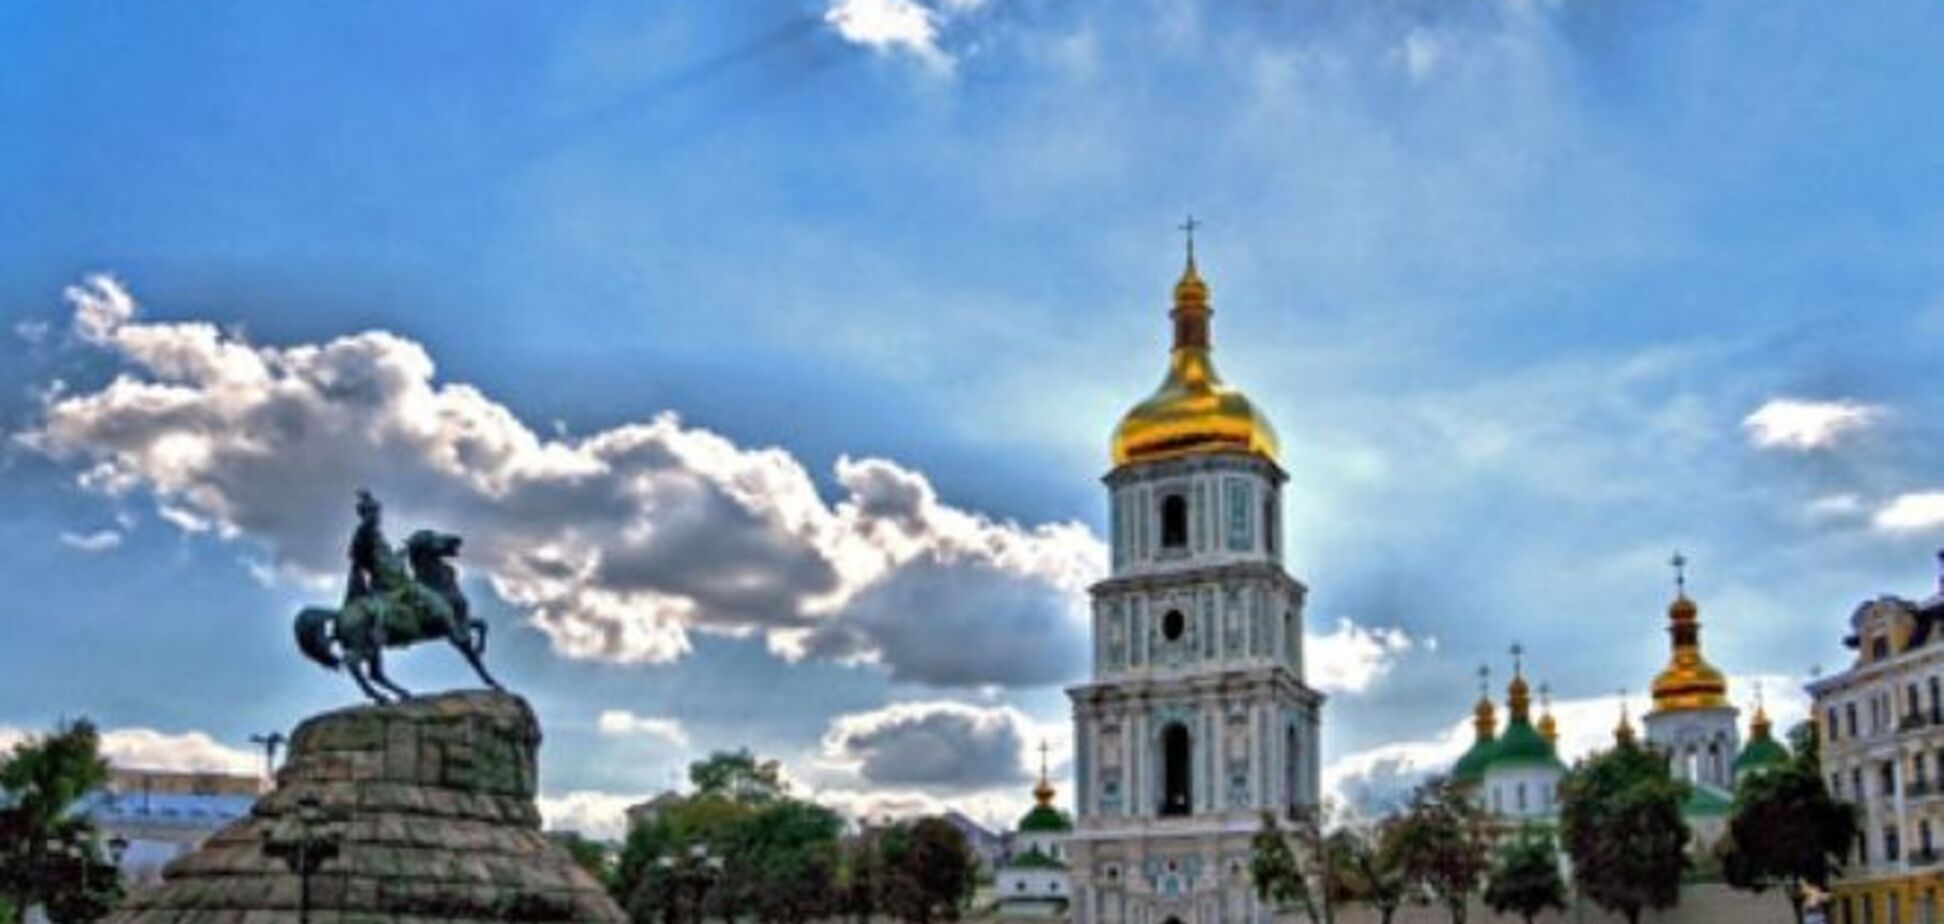 Выборы мэра Киева: кого готова поддержать столица (опрос)